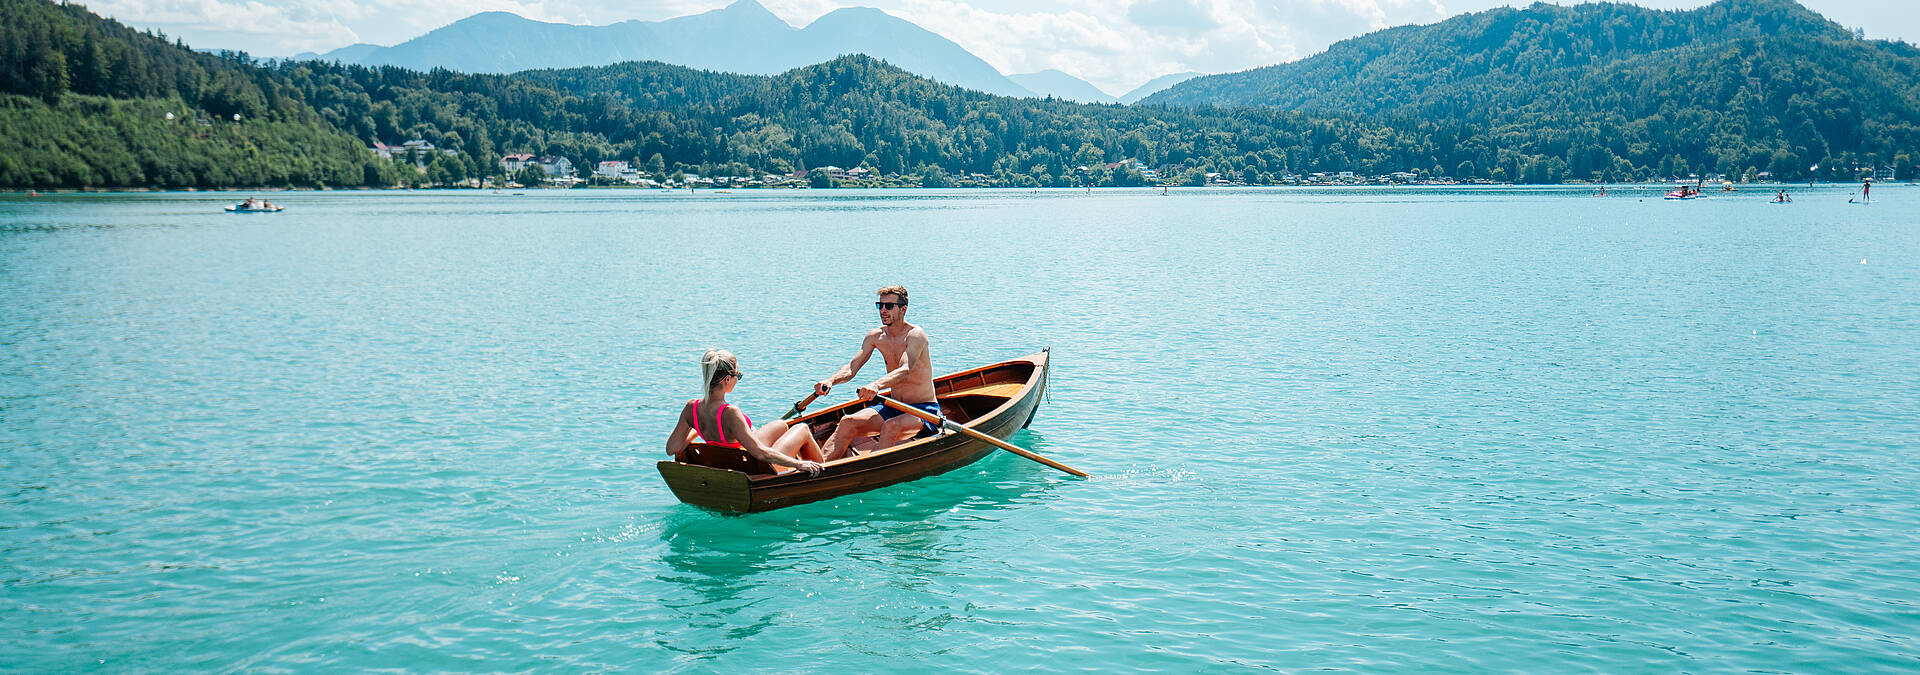 Paerchen mit dem Boot am Klopeiner See